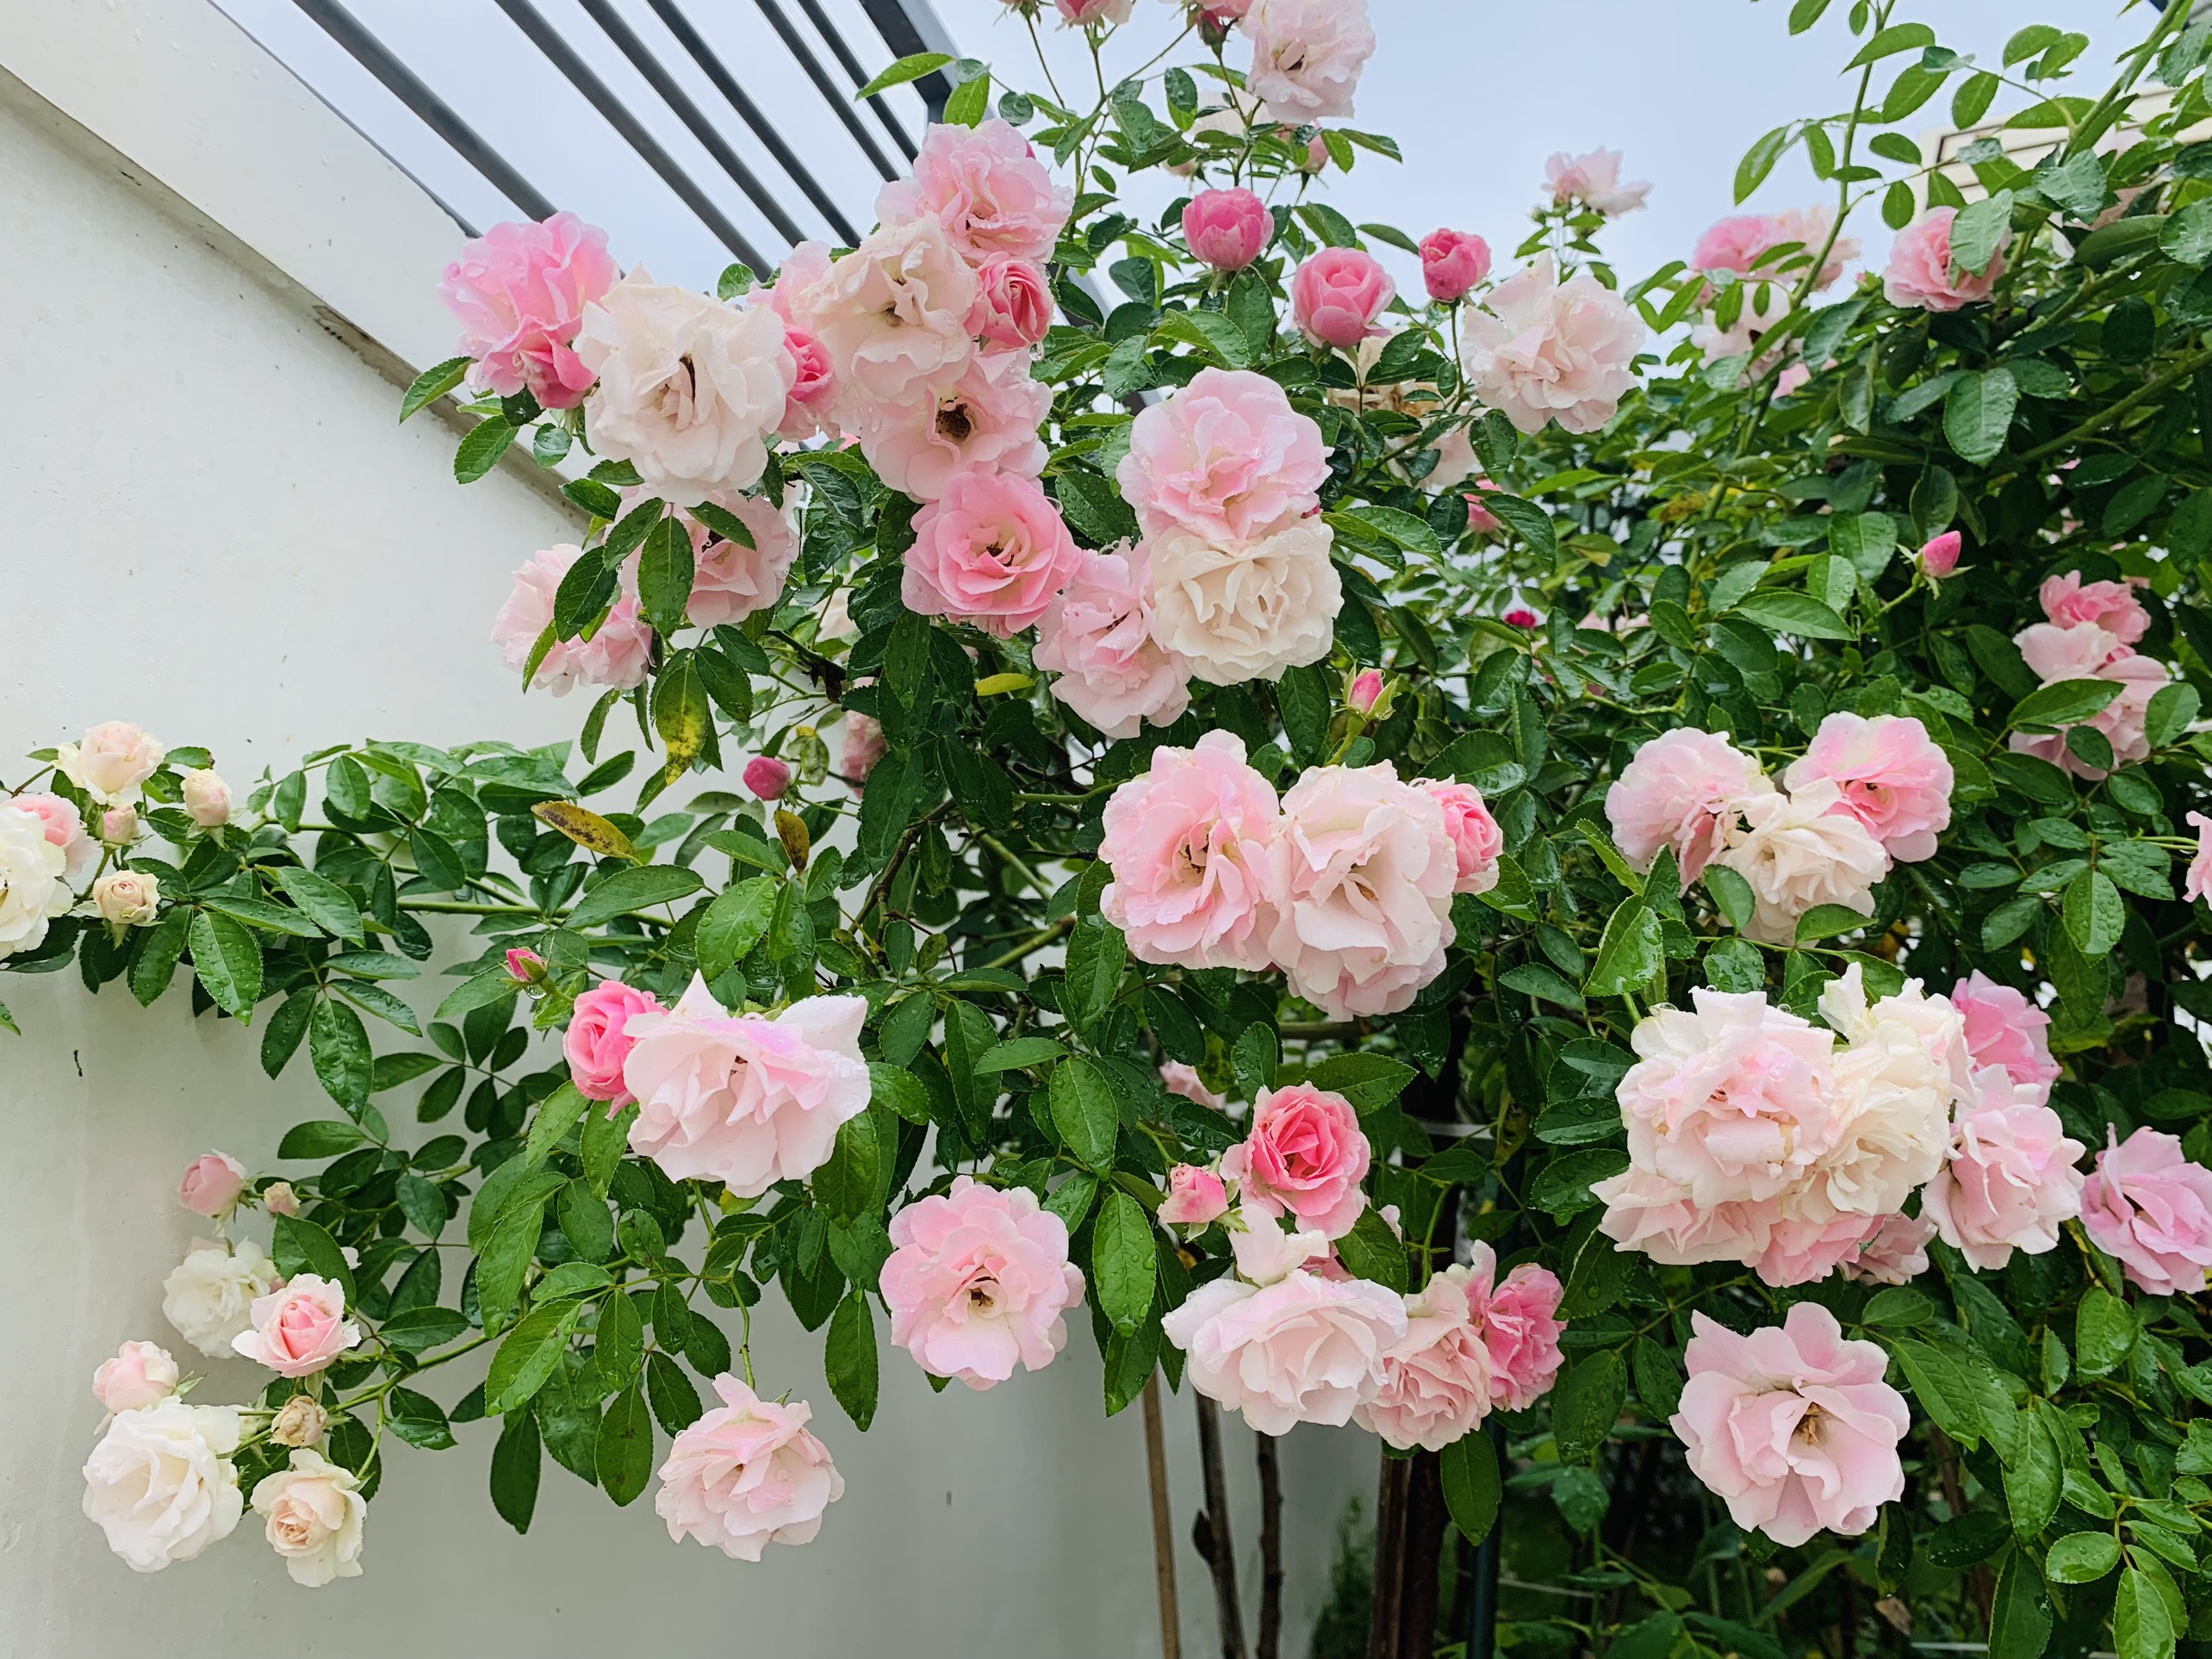 Giàn hoa hồng trước sân nhà với cả nghìn bông rực rỡ trong nắng của chồng  để tỏ tình với vợ